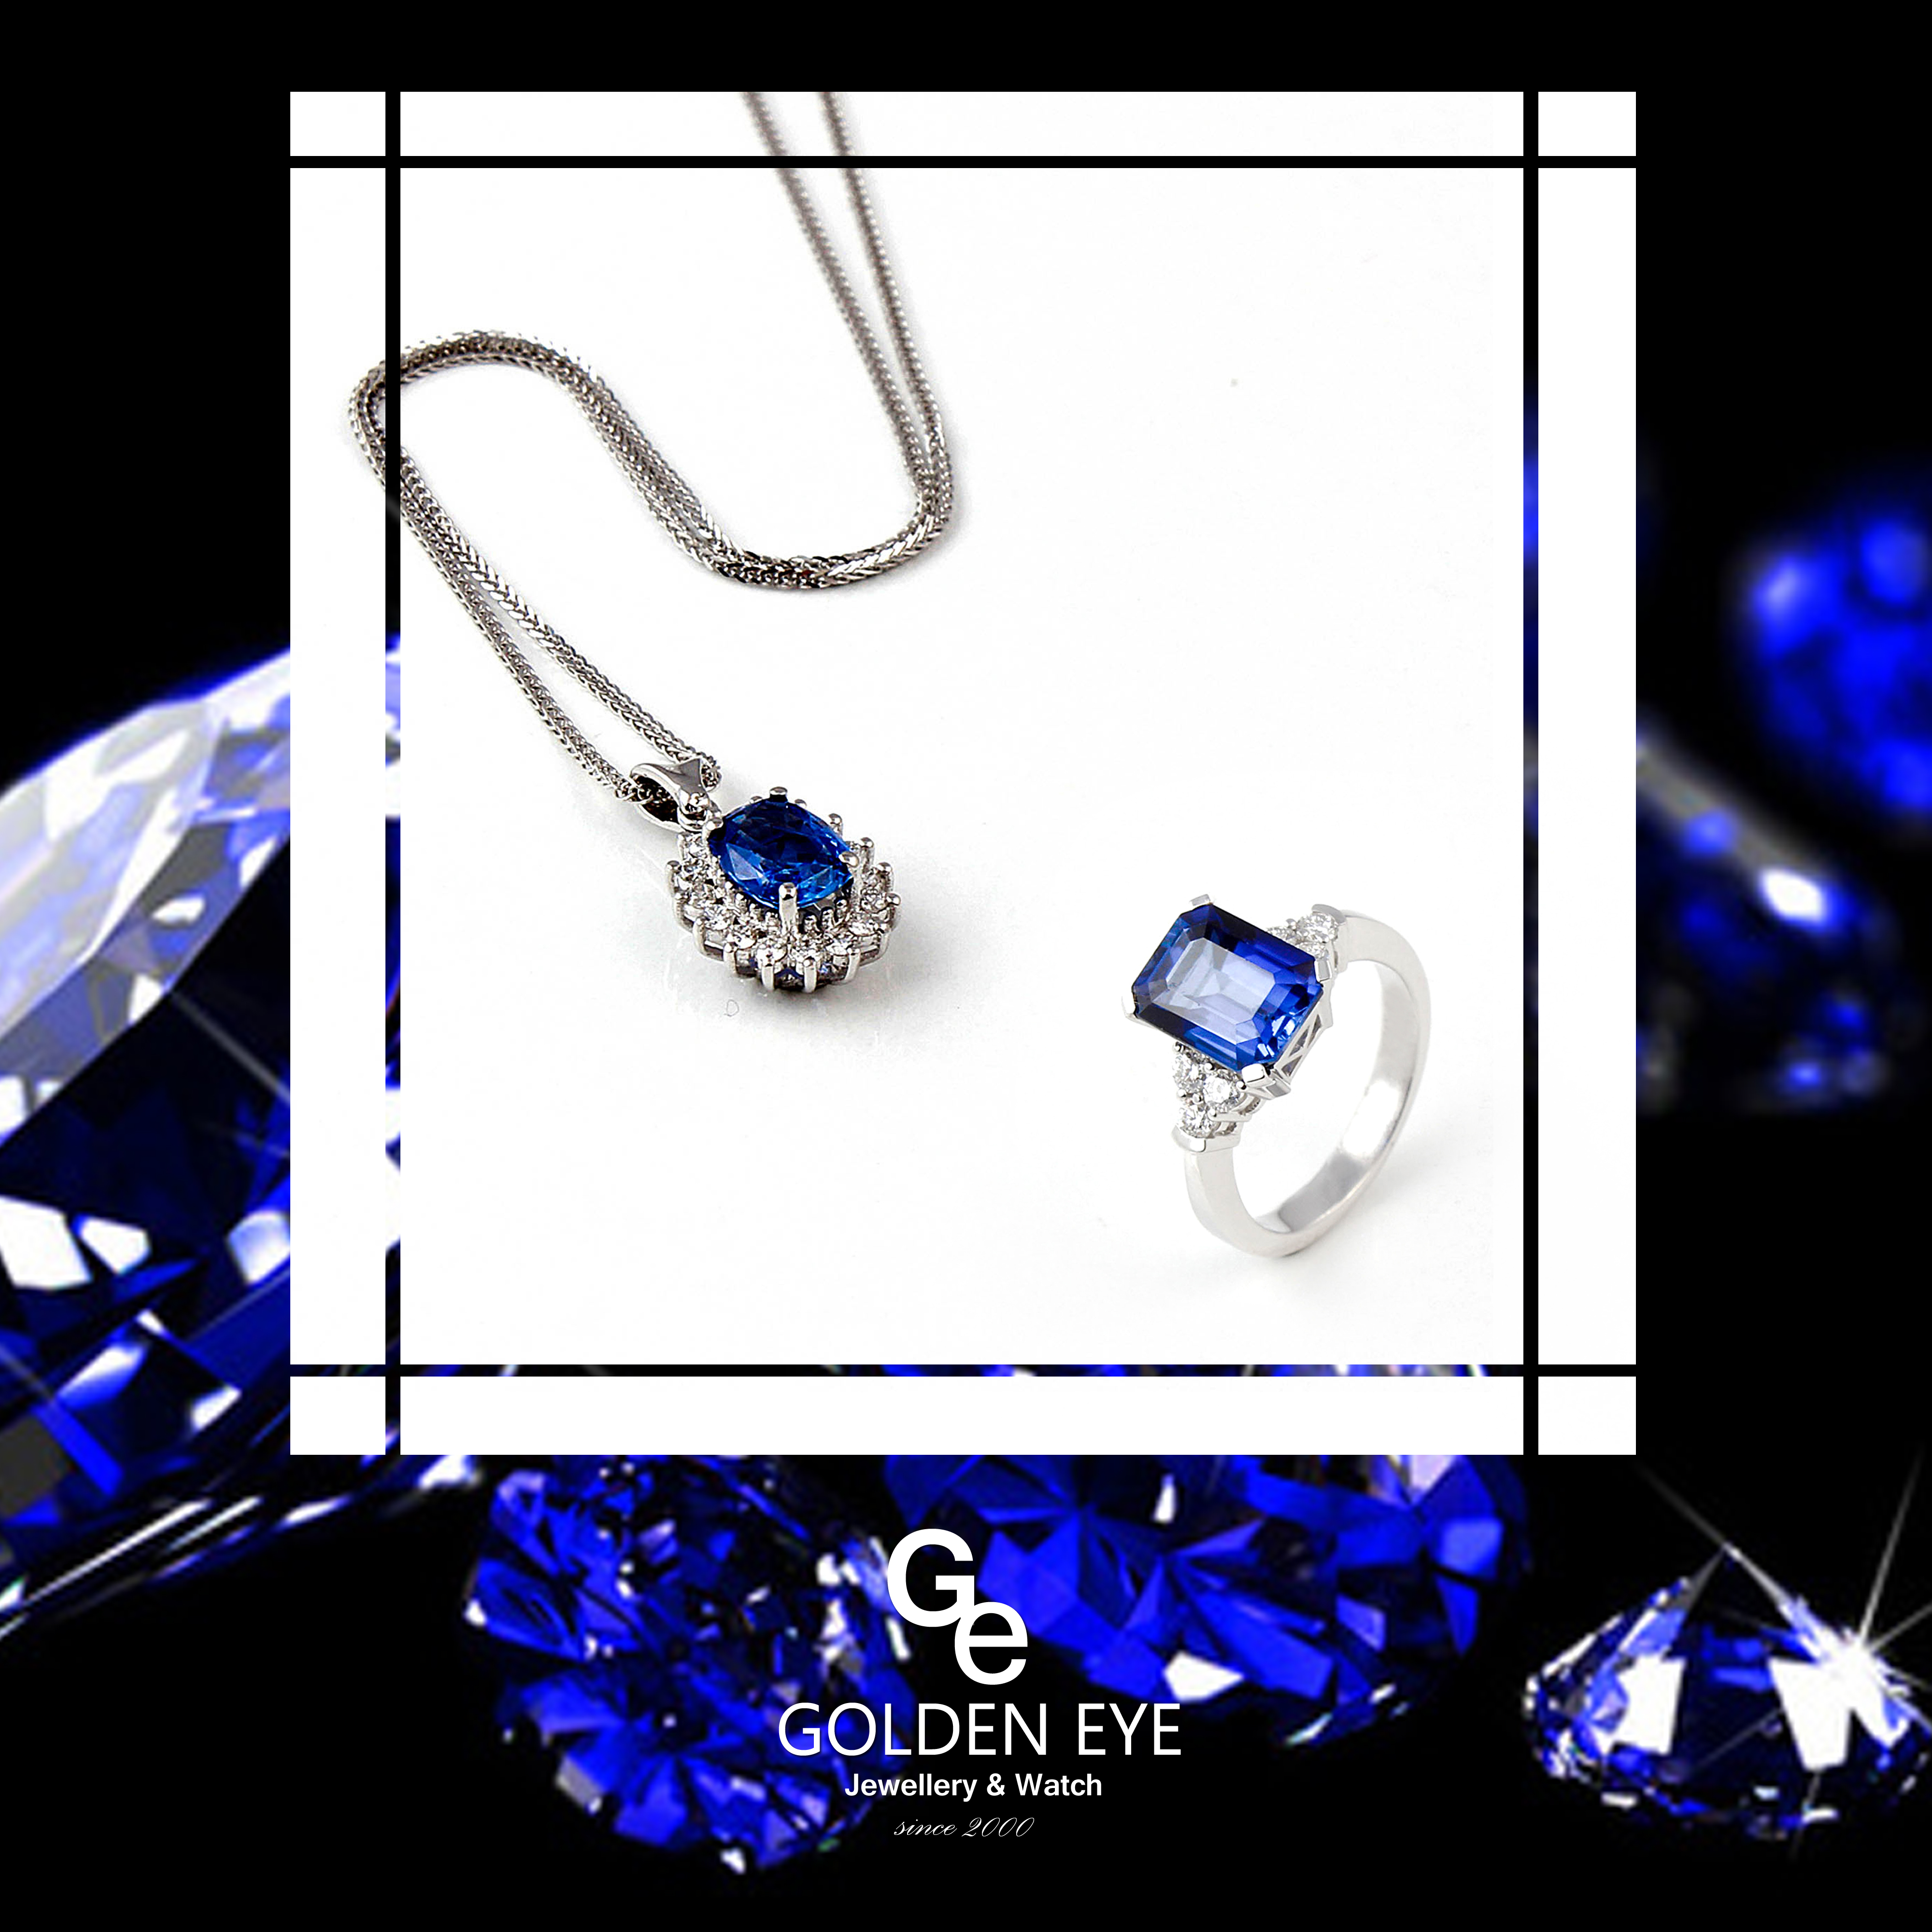 R033A Prsten z bílého zlata s modrým safírem a diamanty